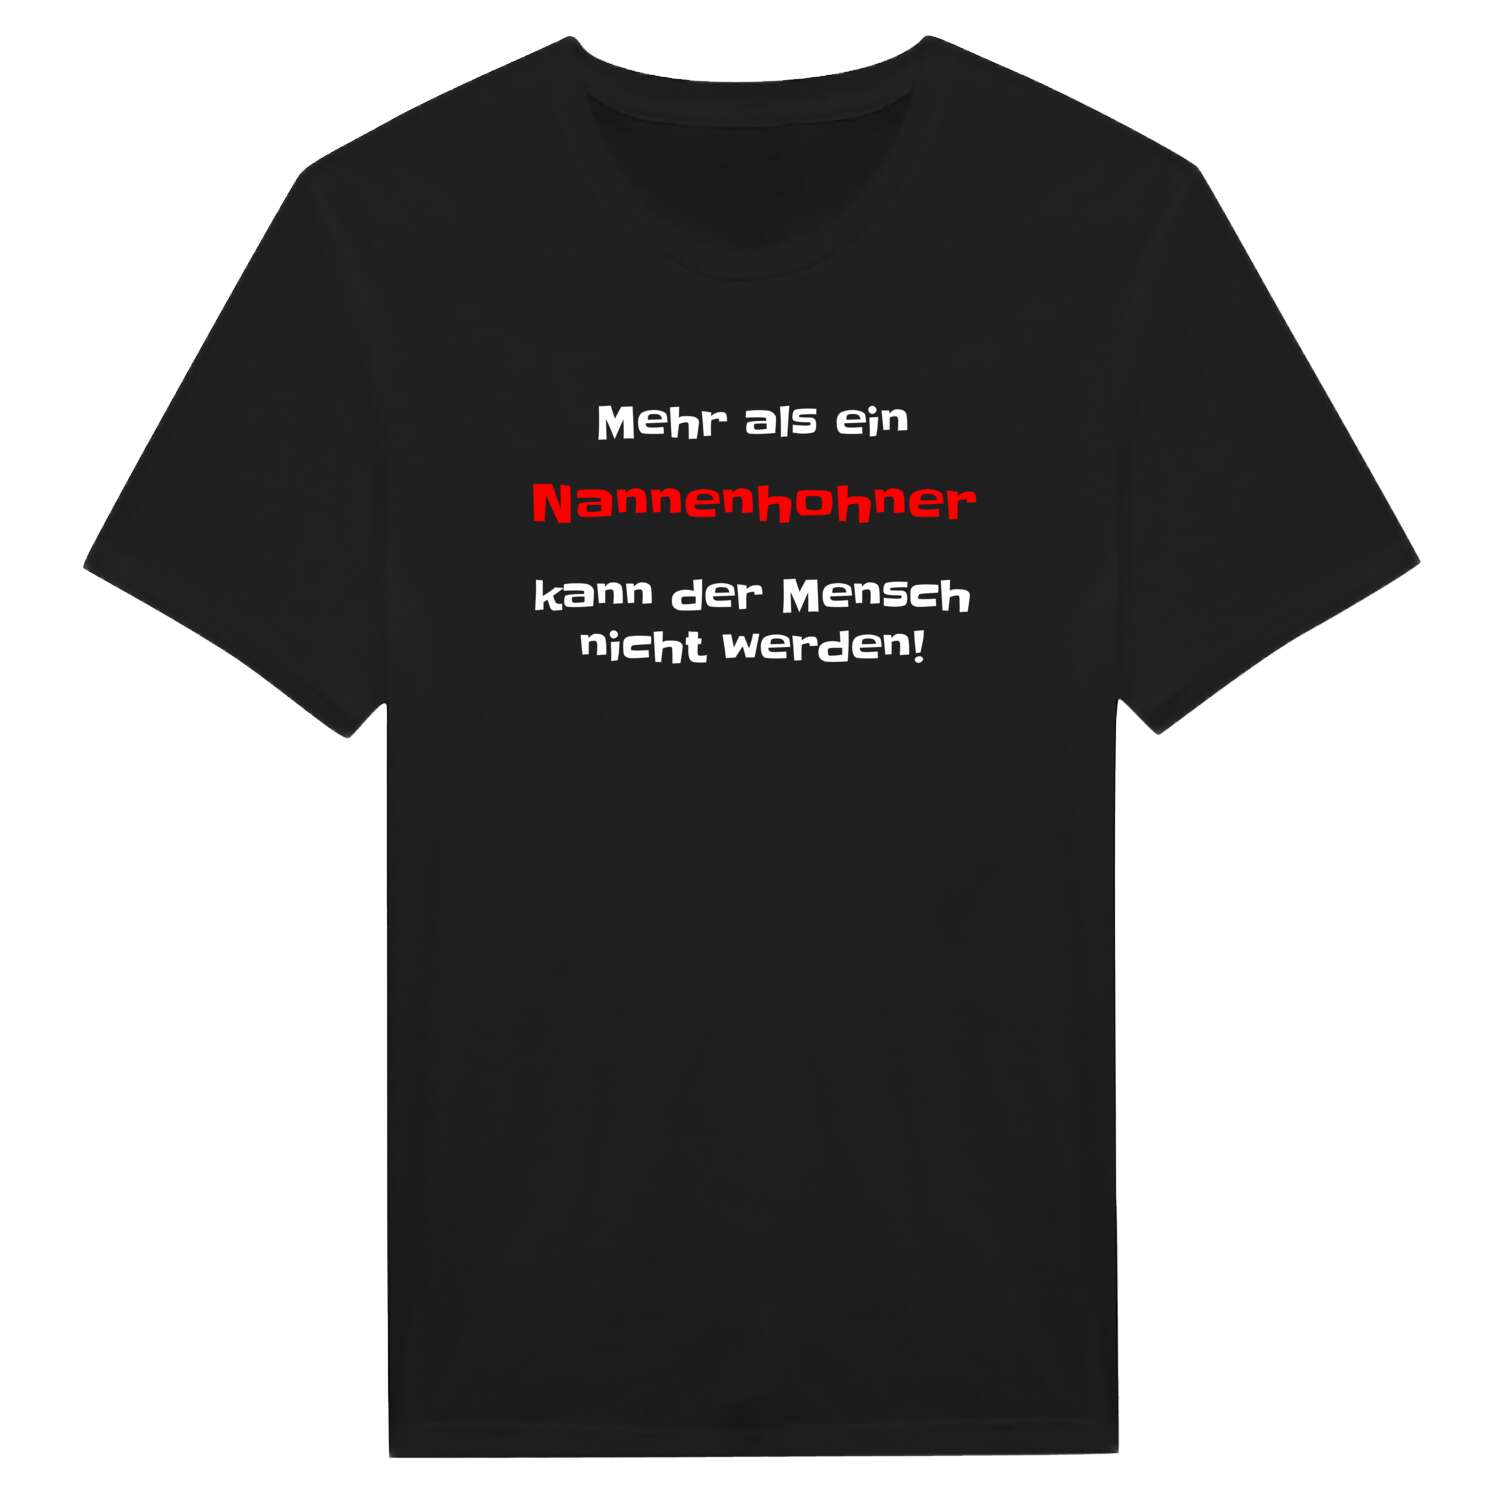 Nannenhohn T-Shirt »Mehr als ein«